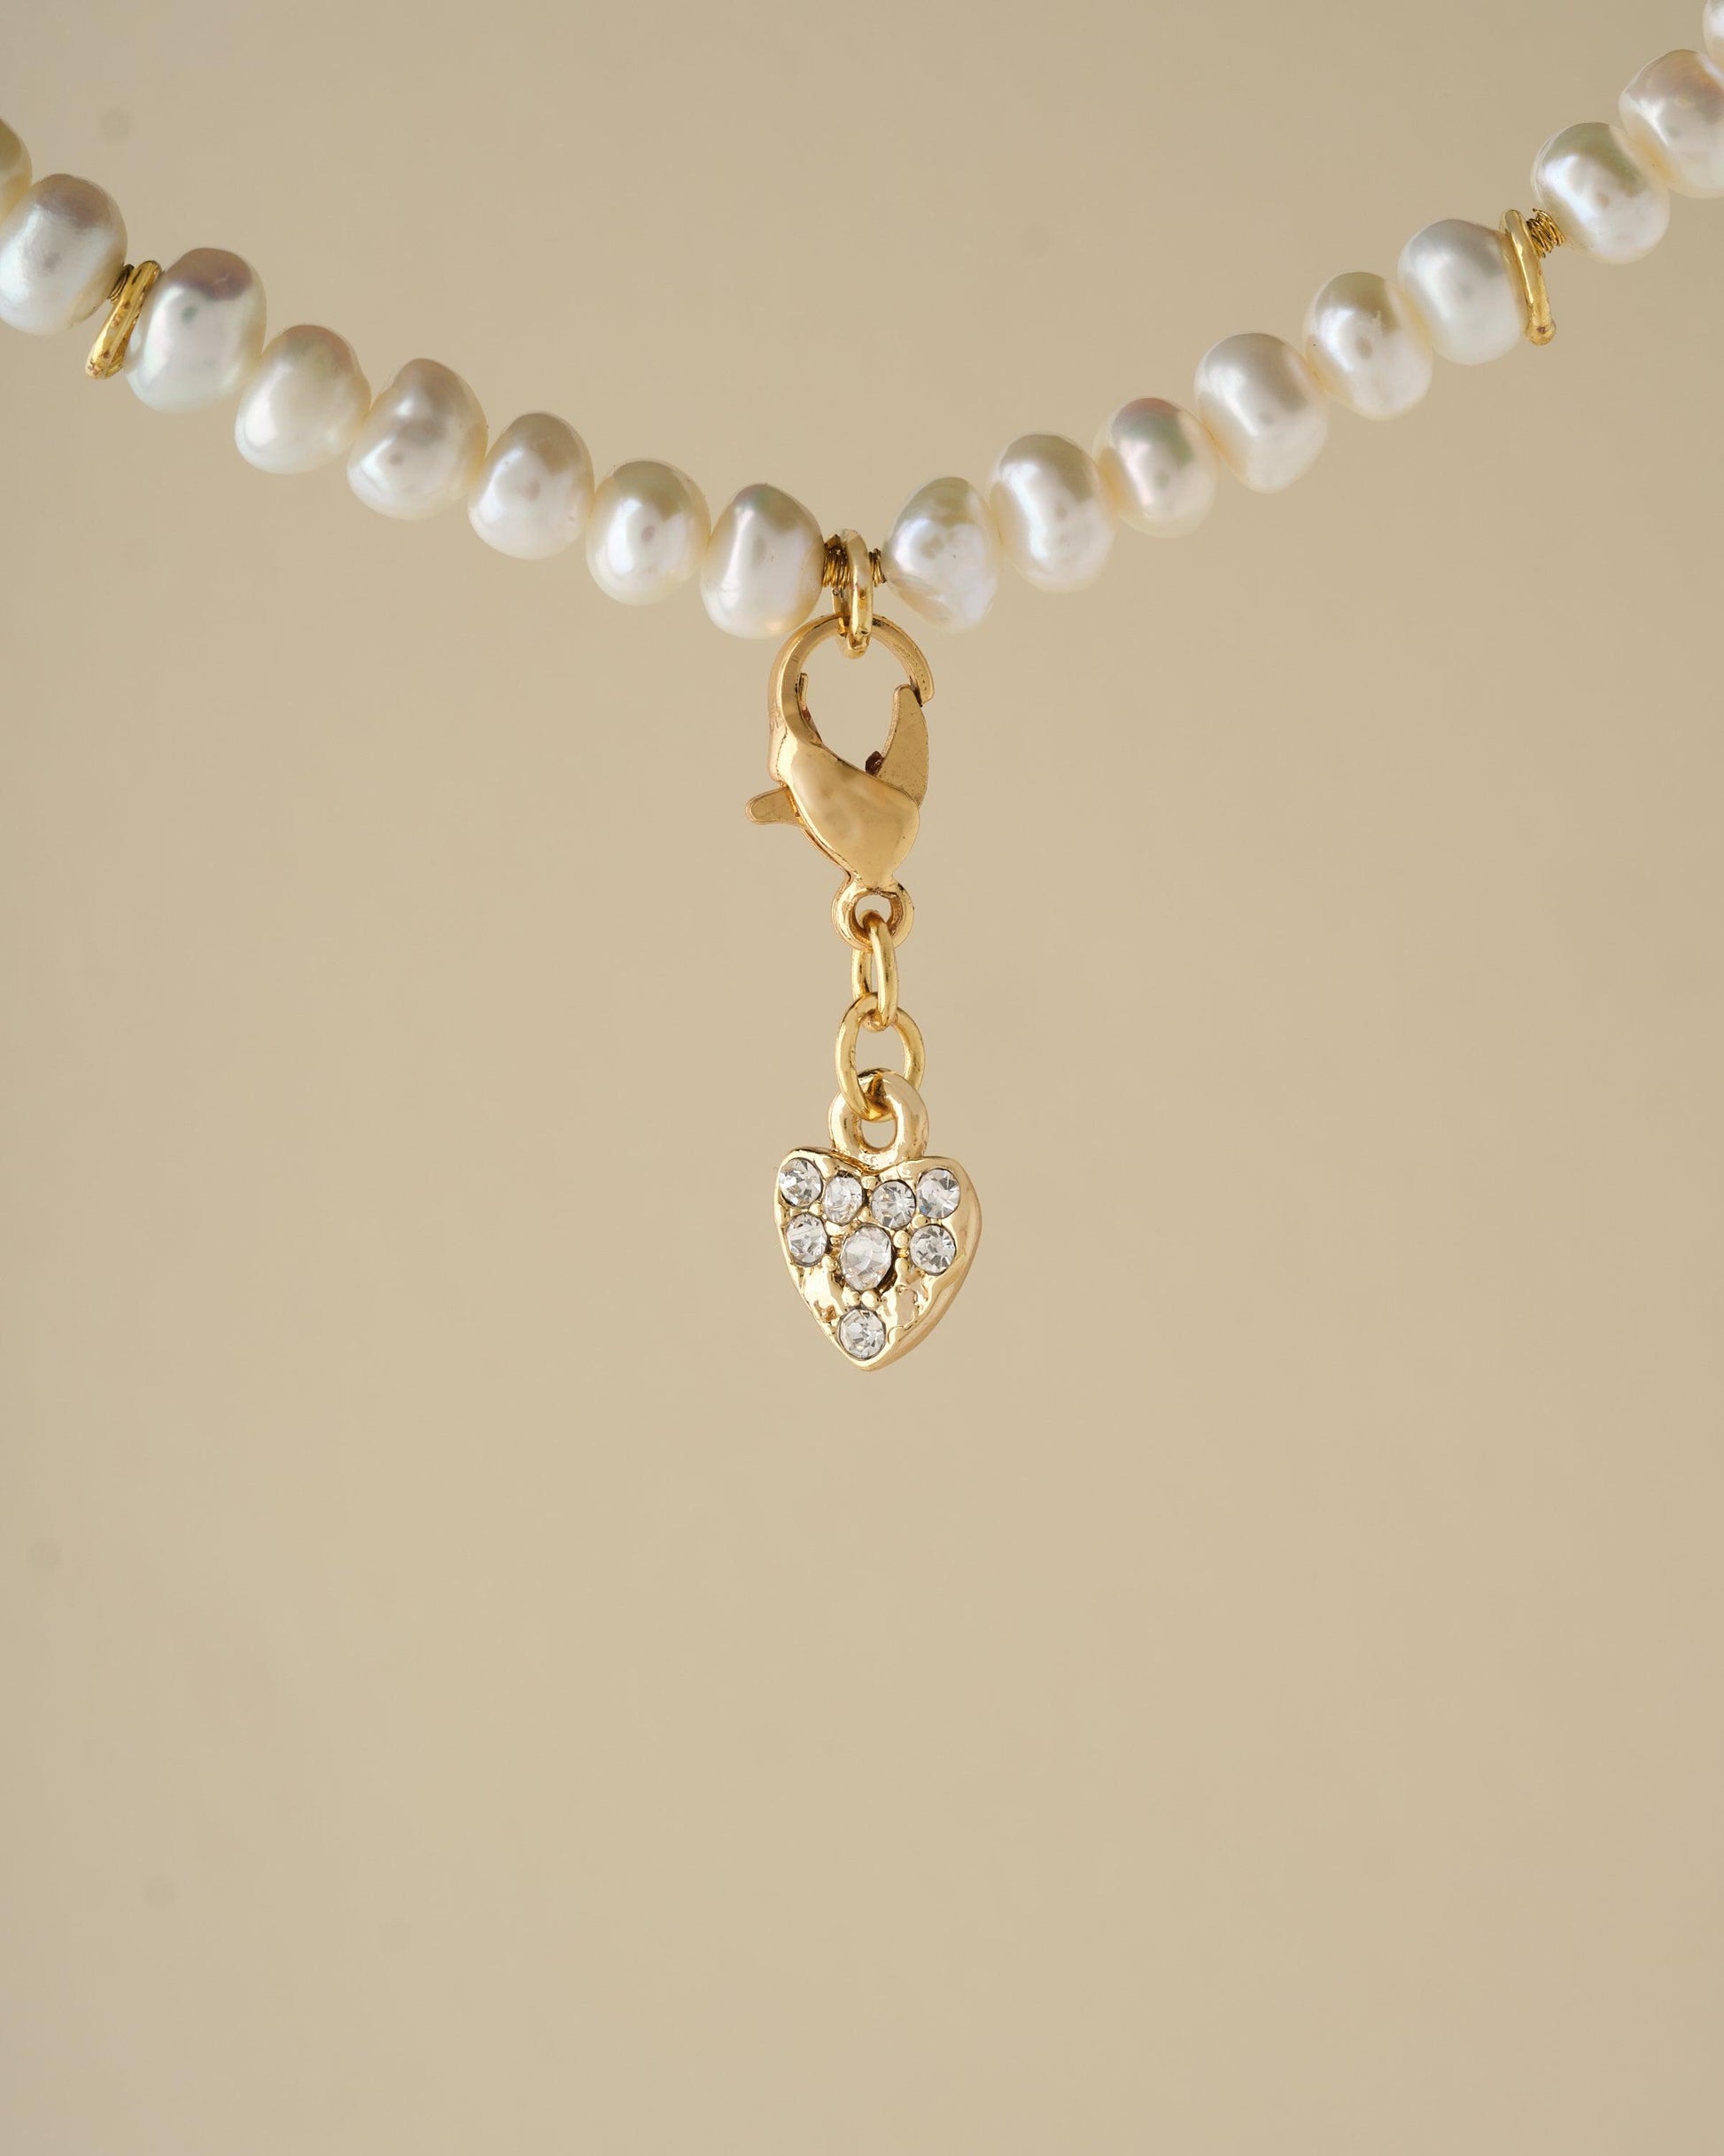 Stone Charm - Chandrani Pearls